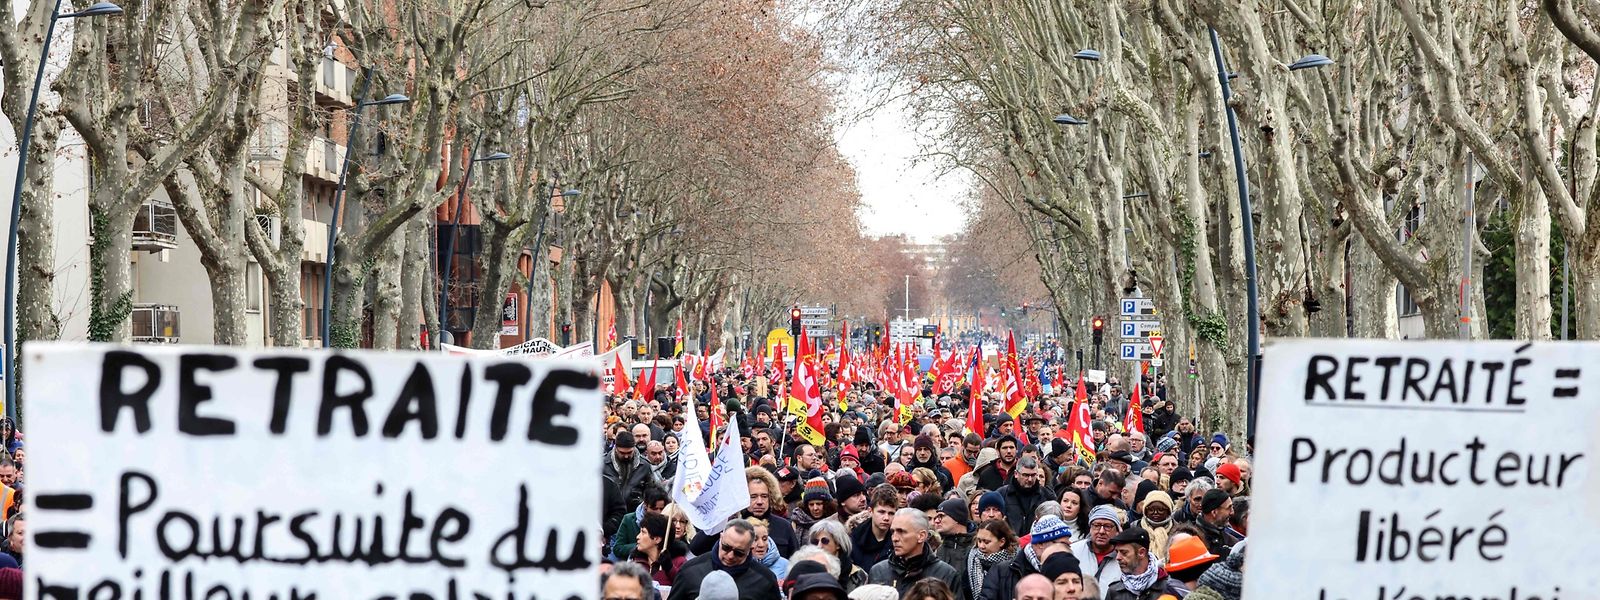 Überall in Frankreich gab es Proteste gegen die Rentenreform, etwa hier in Toulouse.